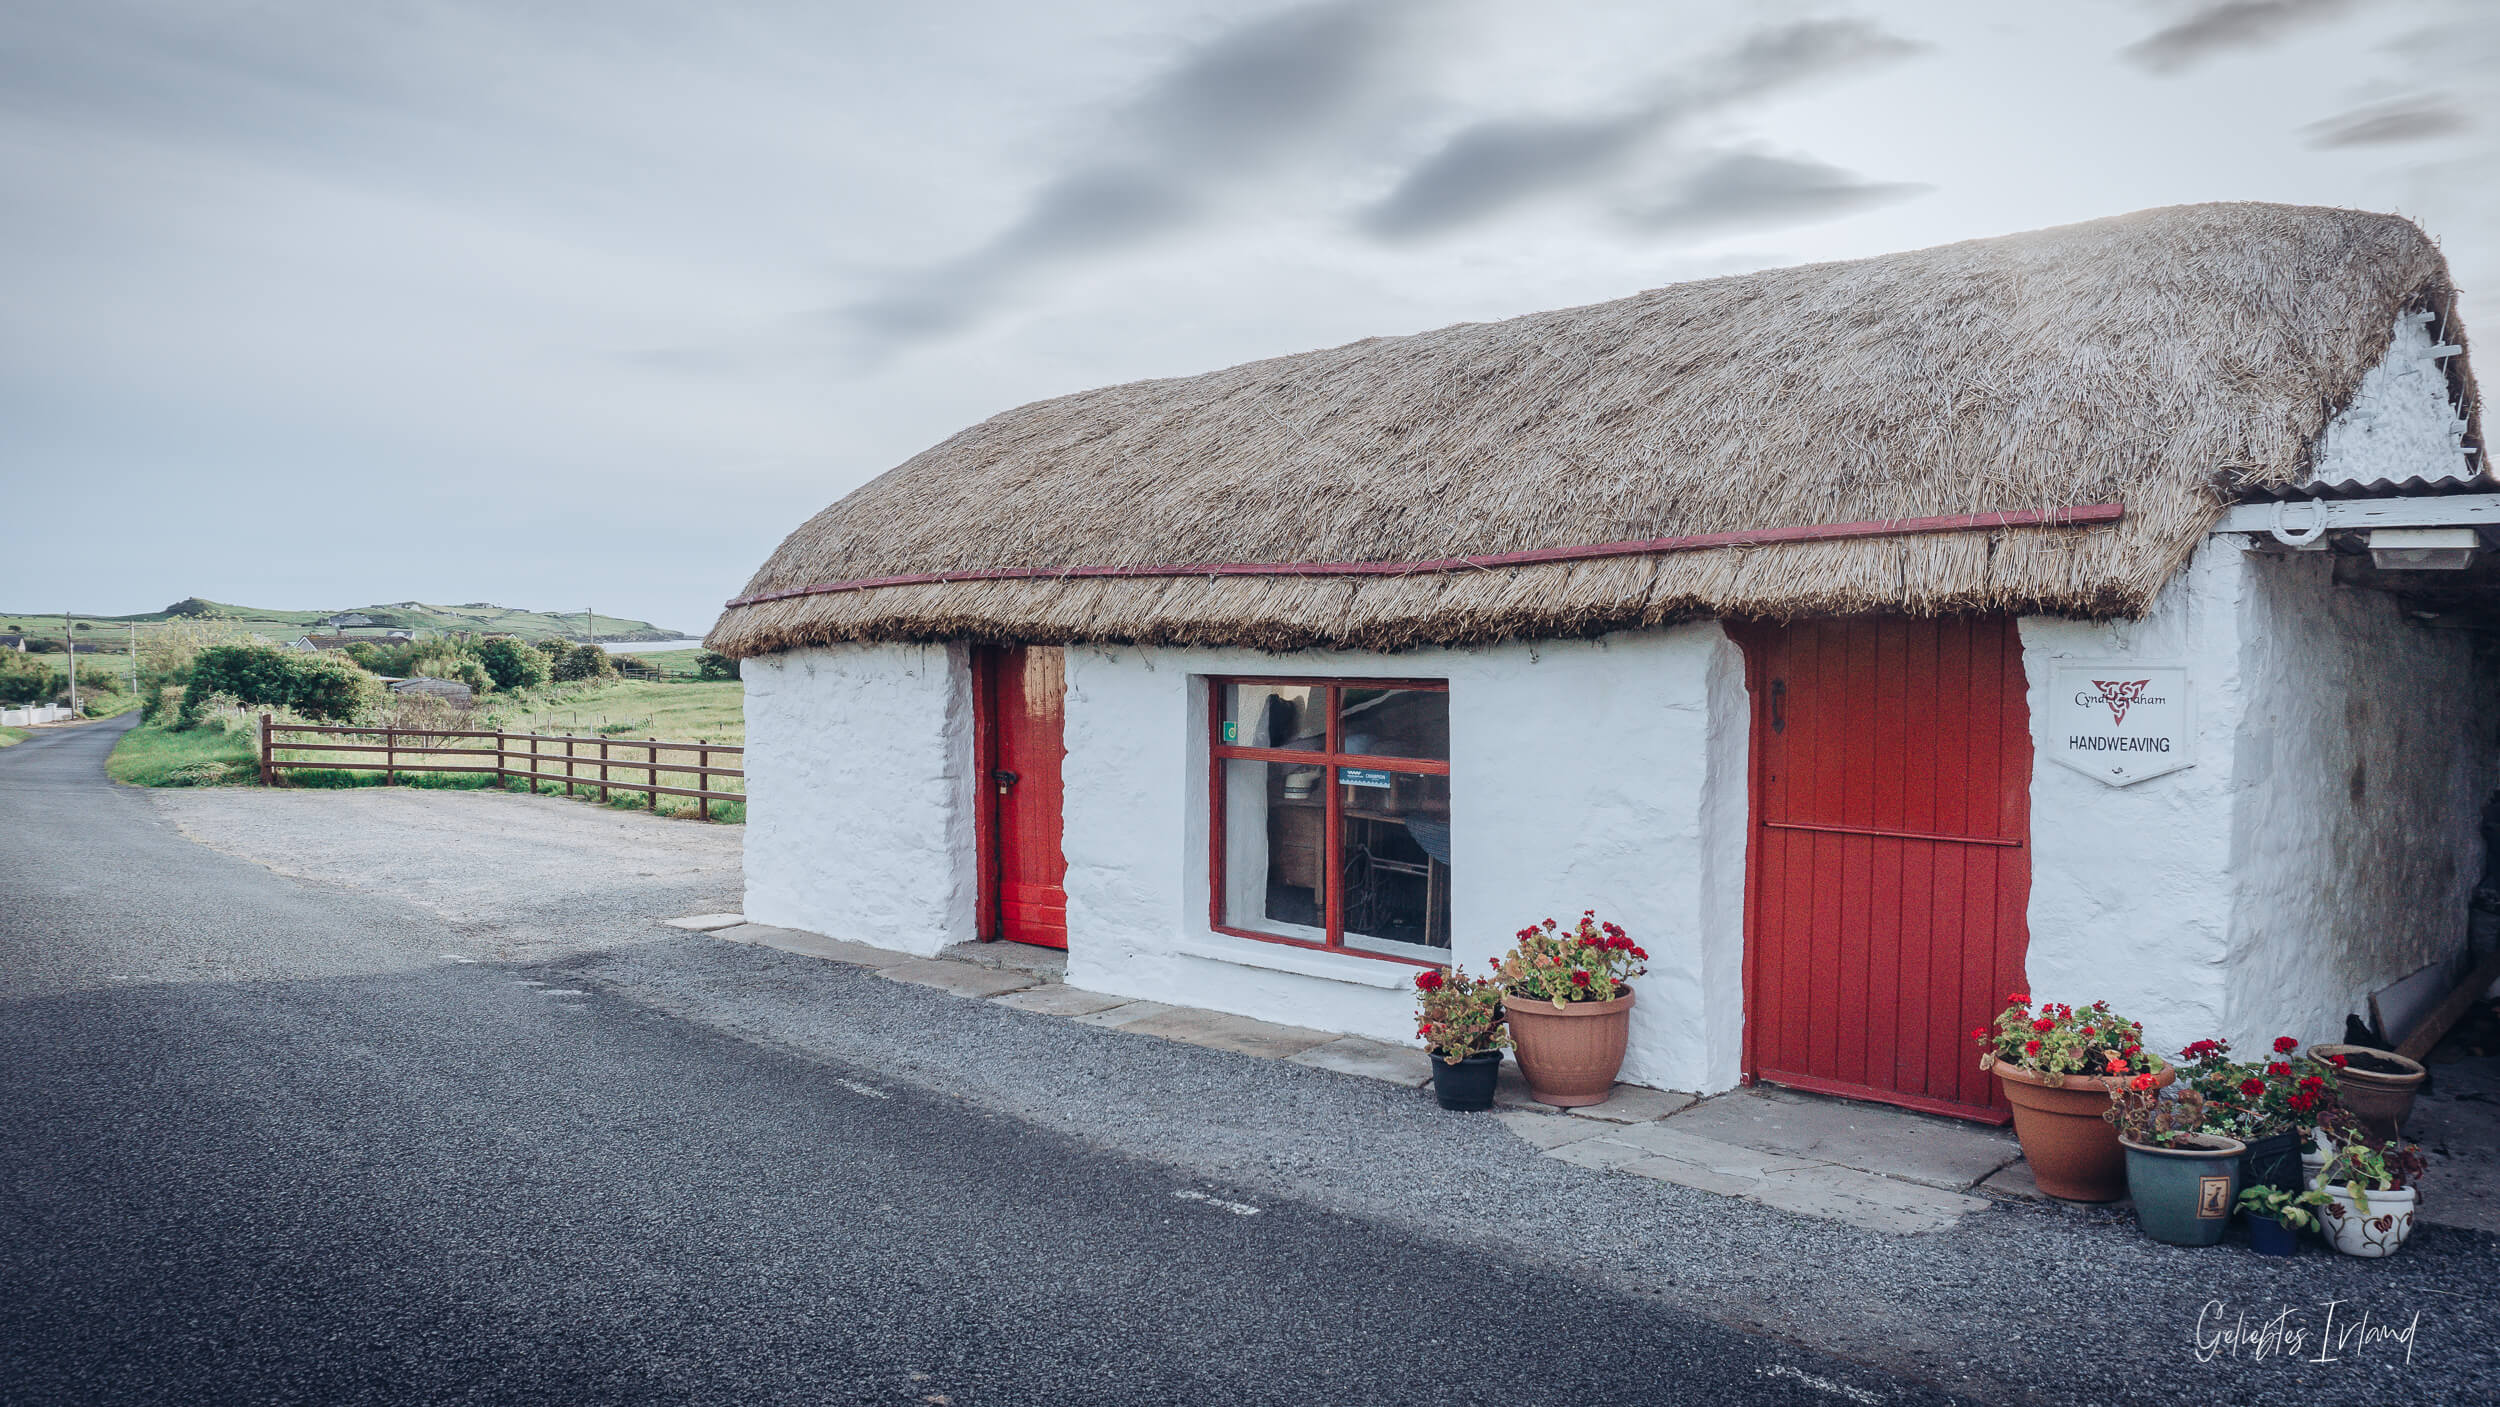 Reetdach Cottage und Handweberei am St Johns Point von geliebtes Irland-2